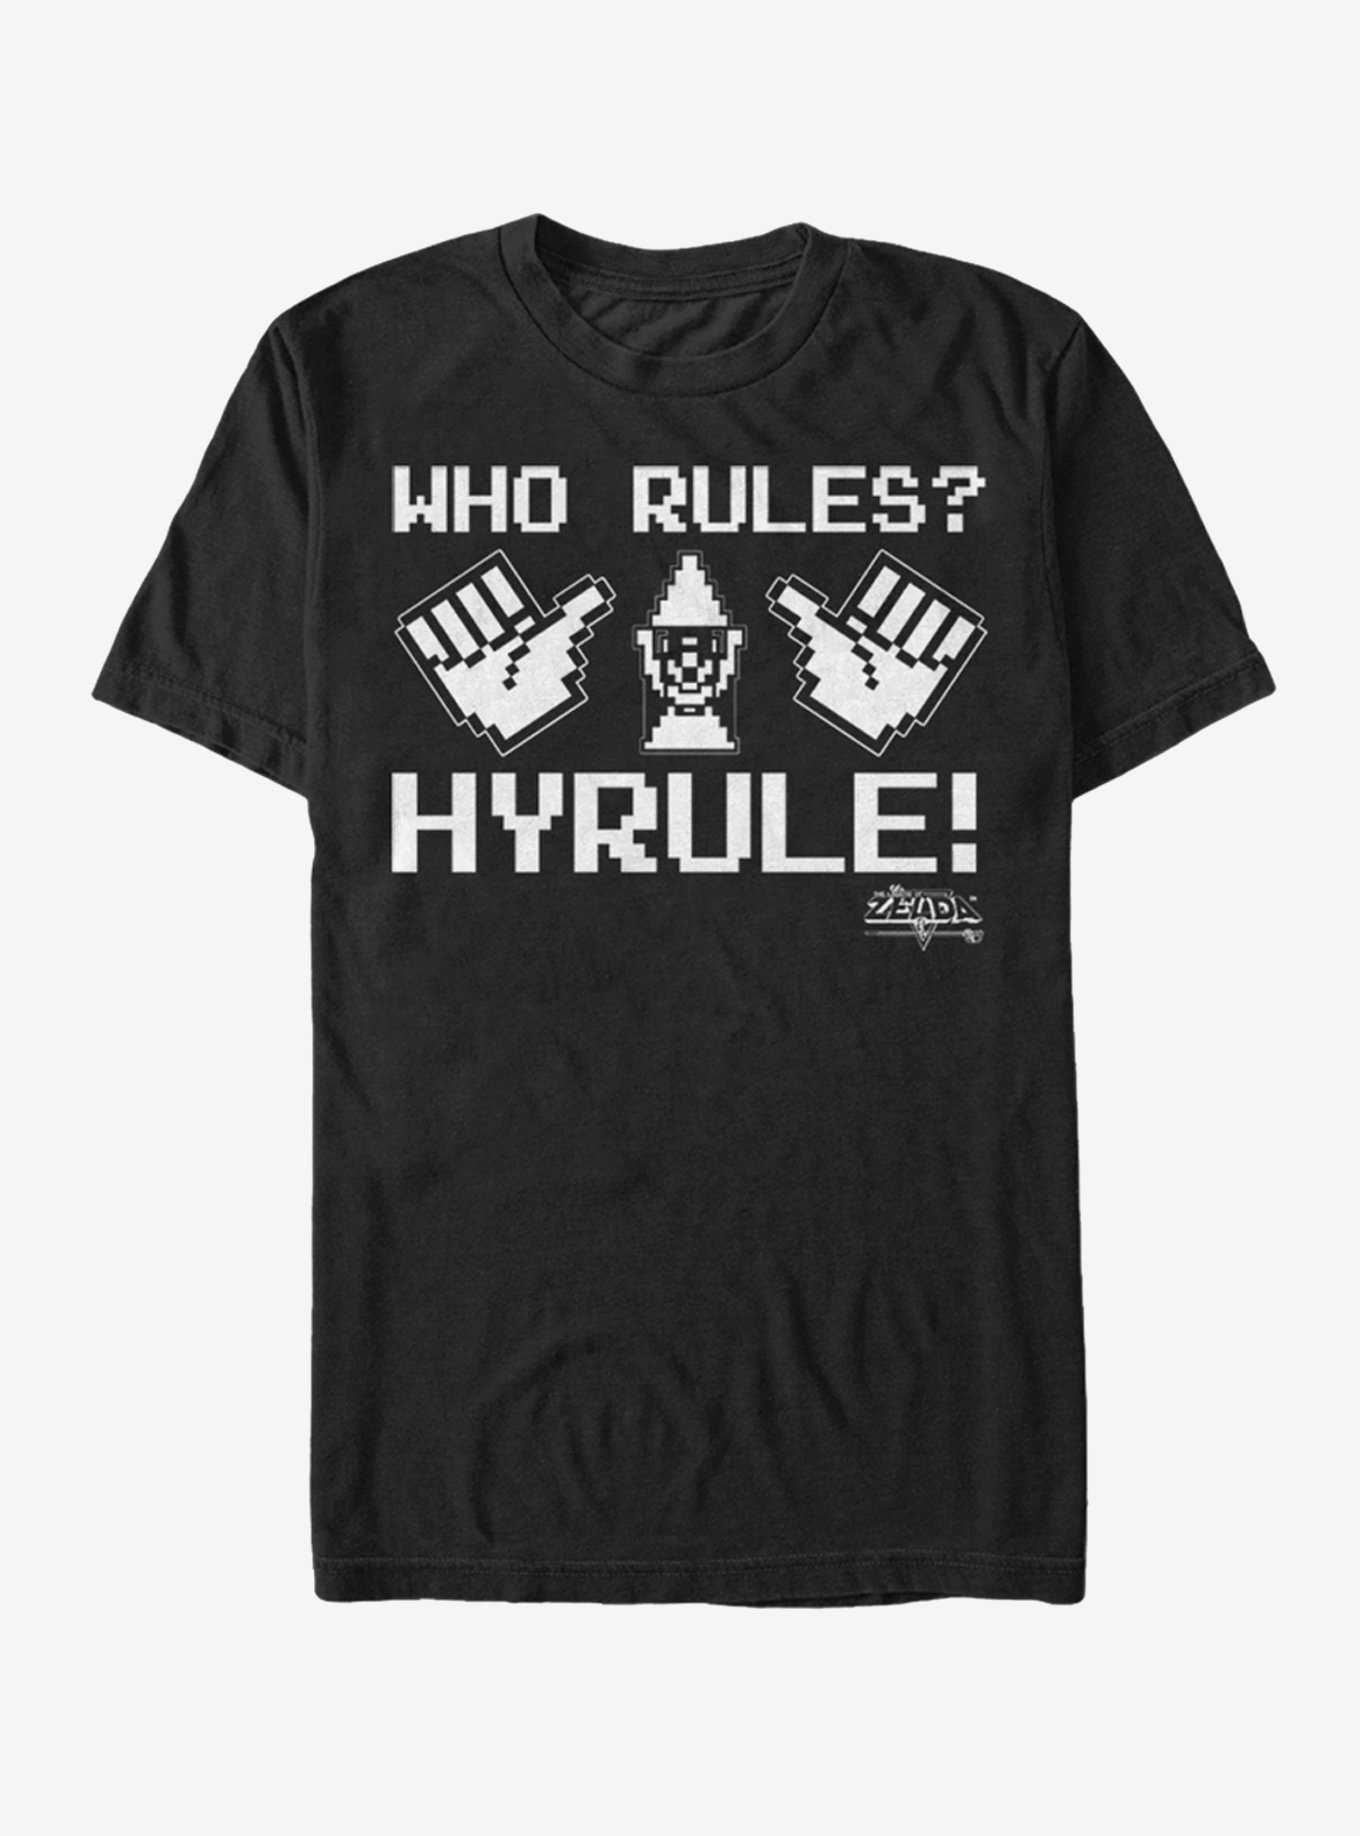 Nintendo Legend of Zelda Who Rules Hyrule T-Shirt, , hi-res